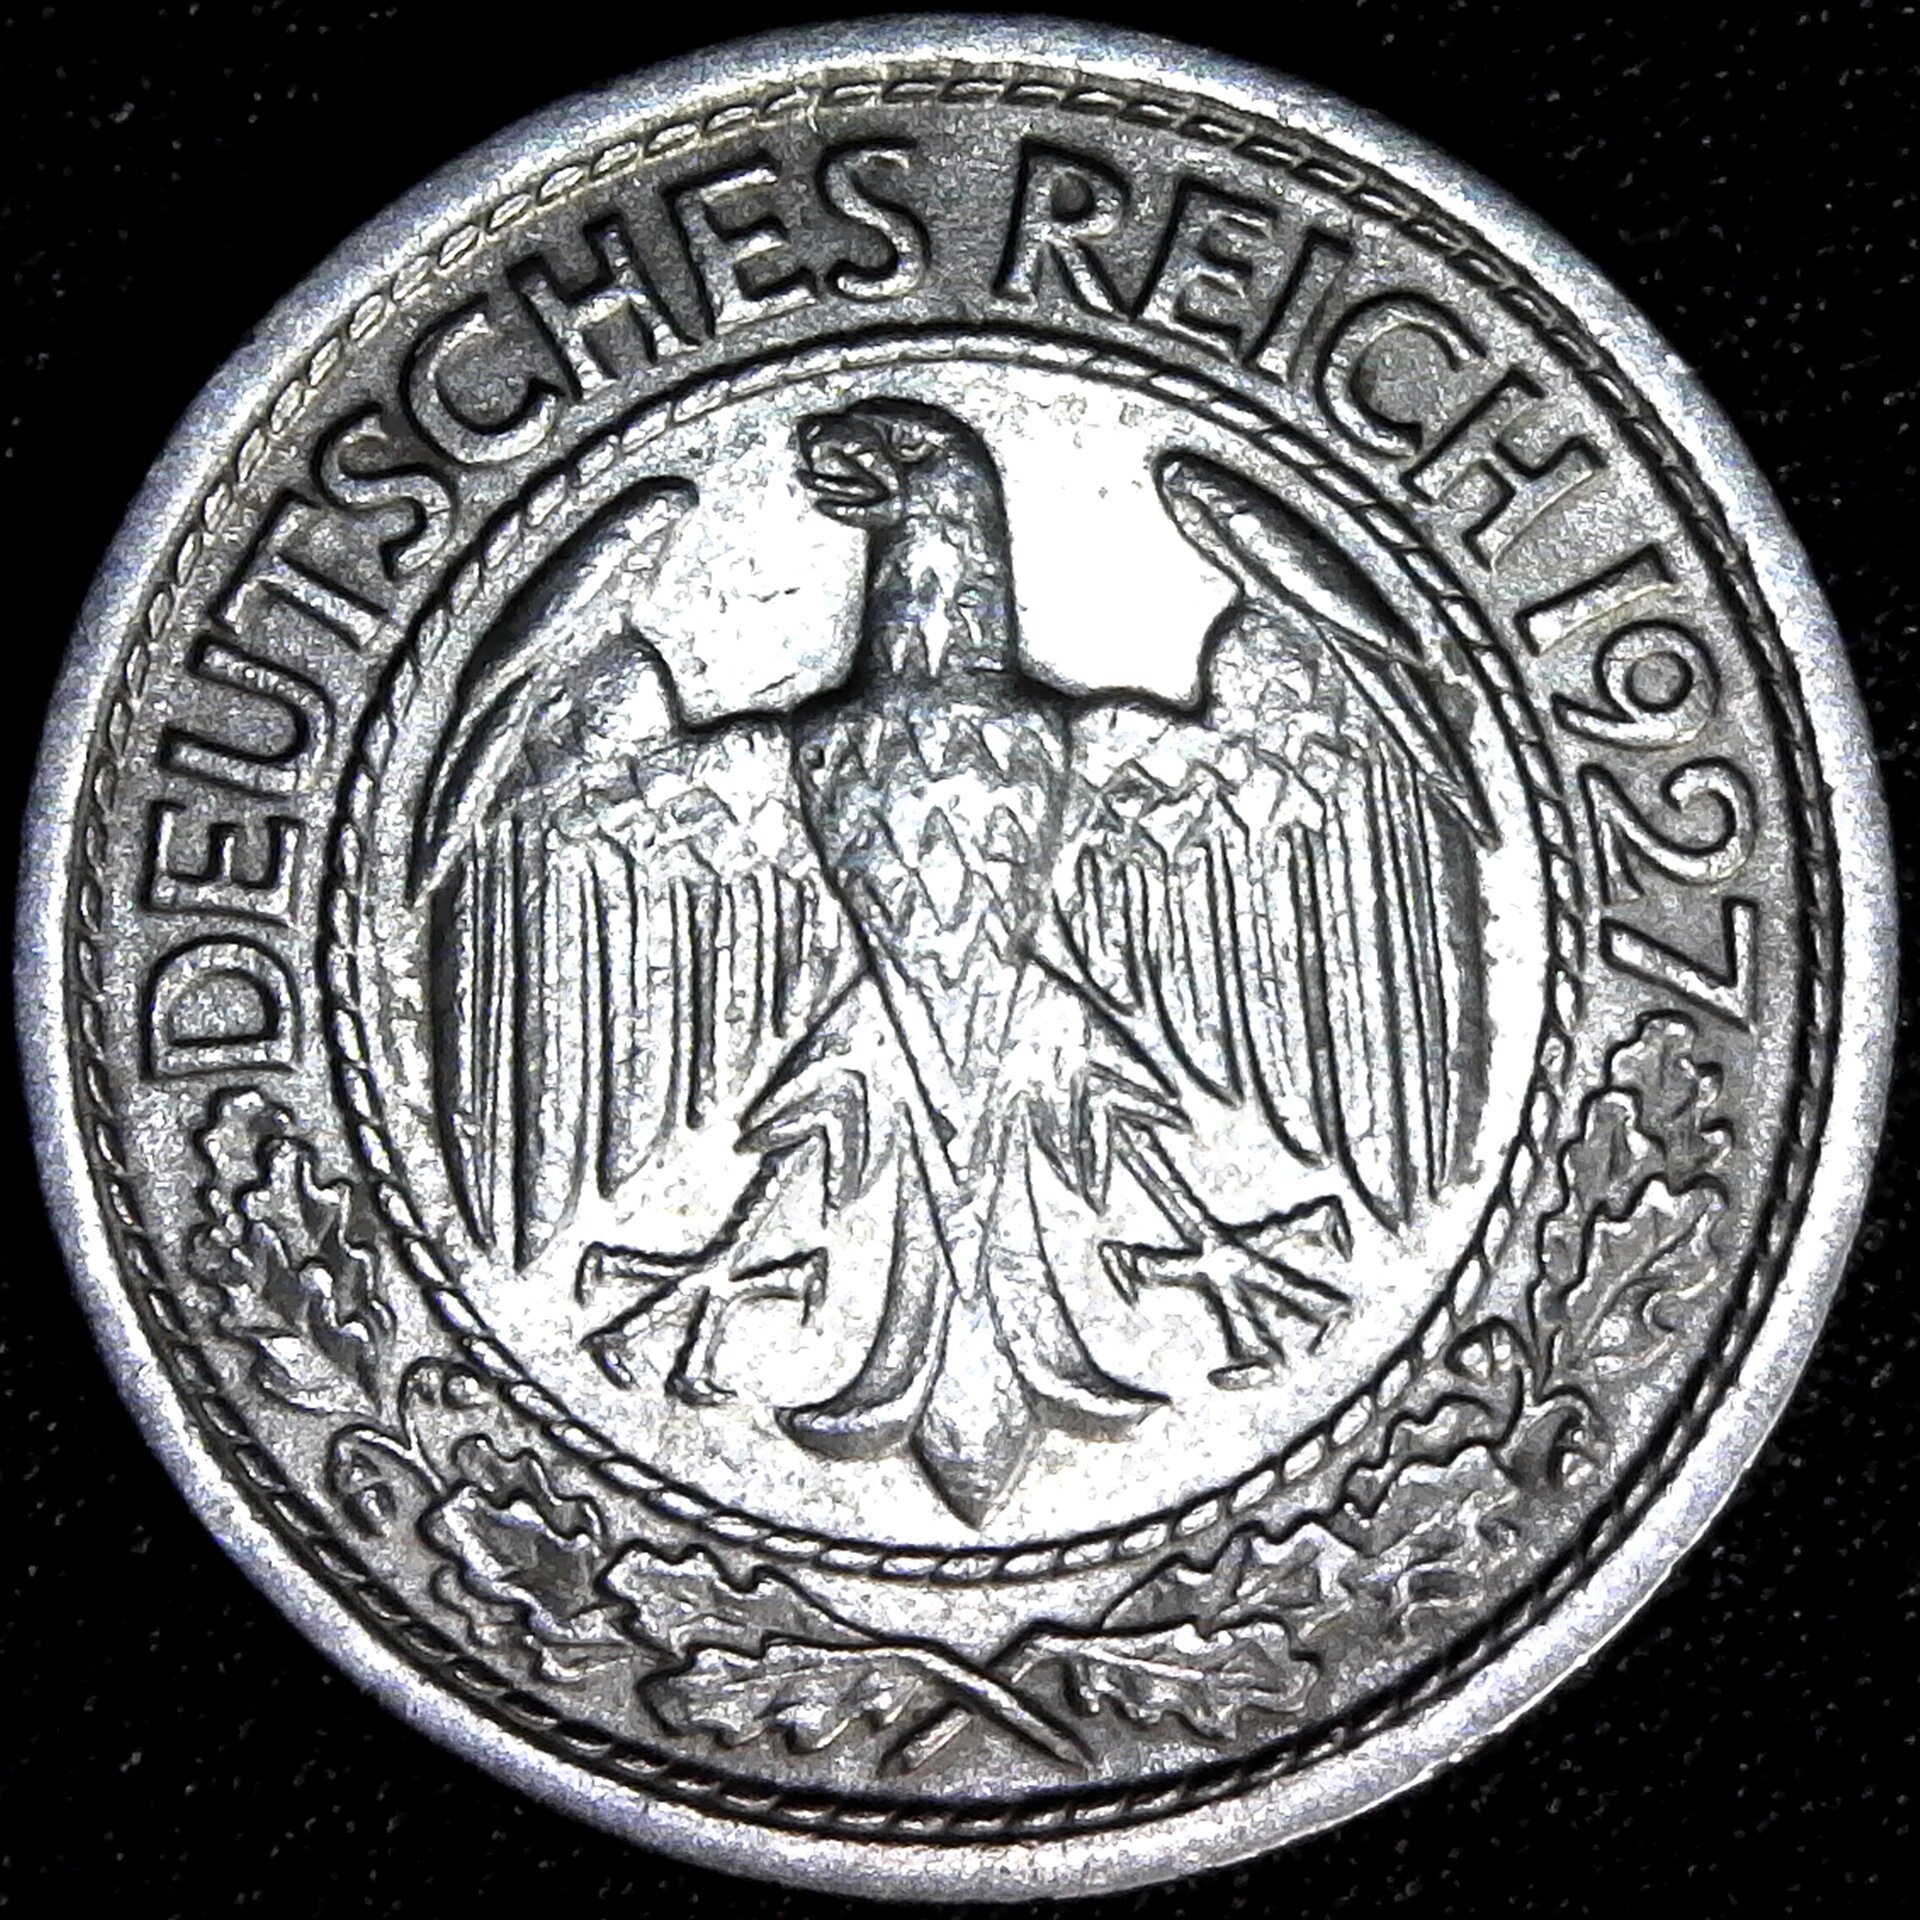 Germany 50 Reichspfennig 1927 J obv.jpg